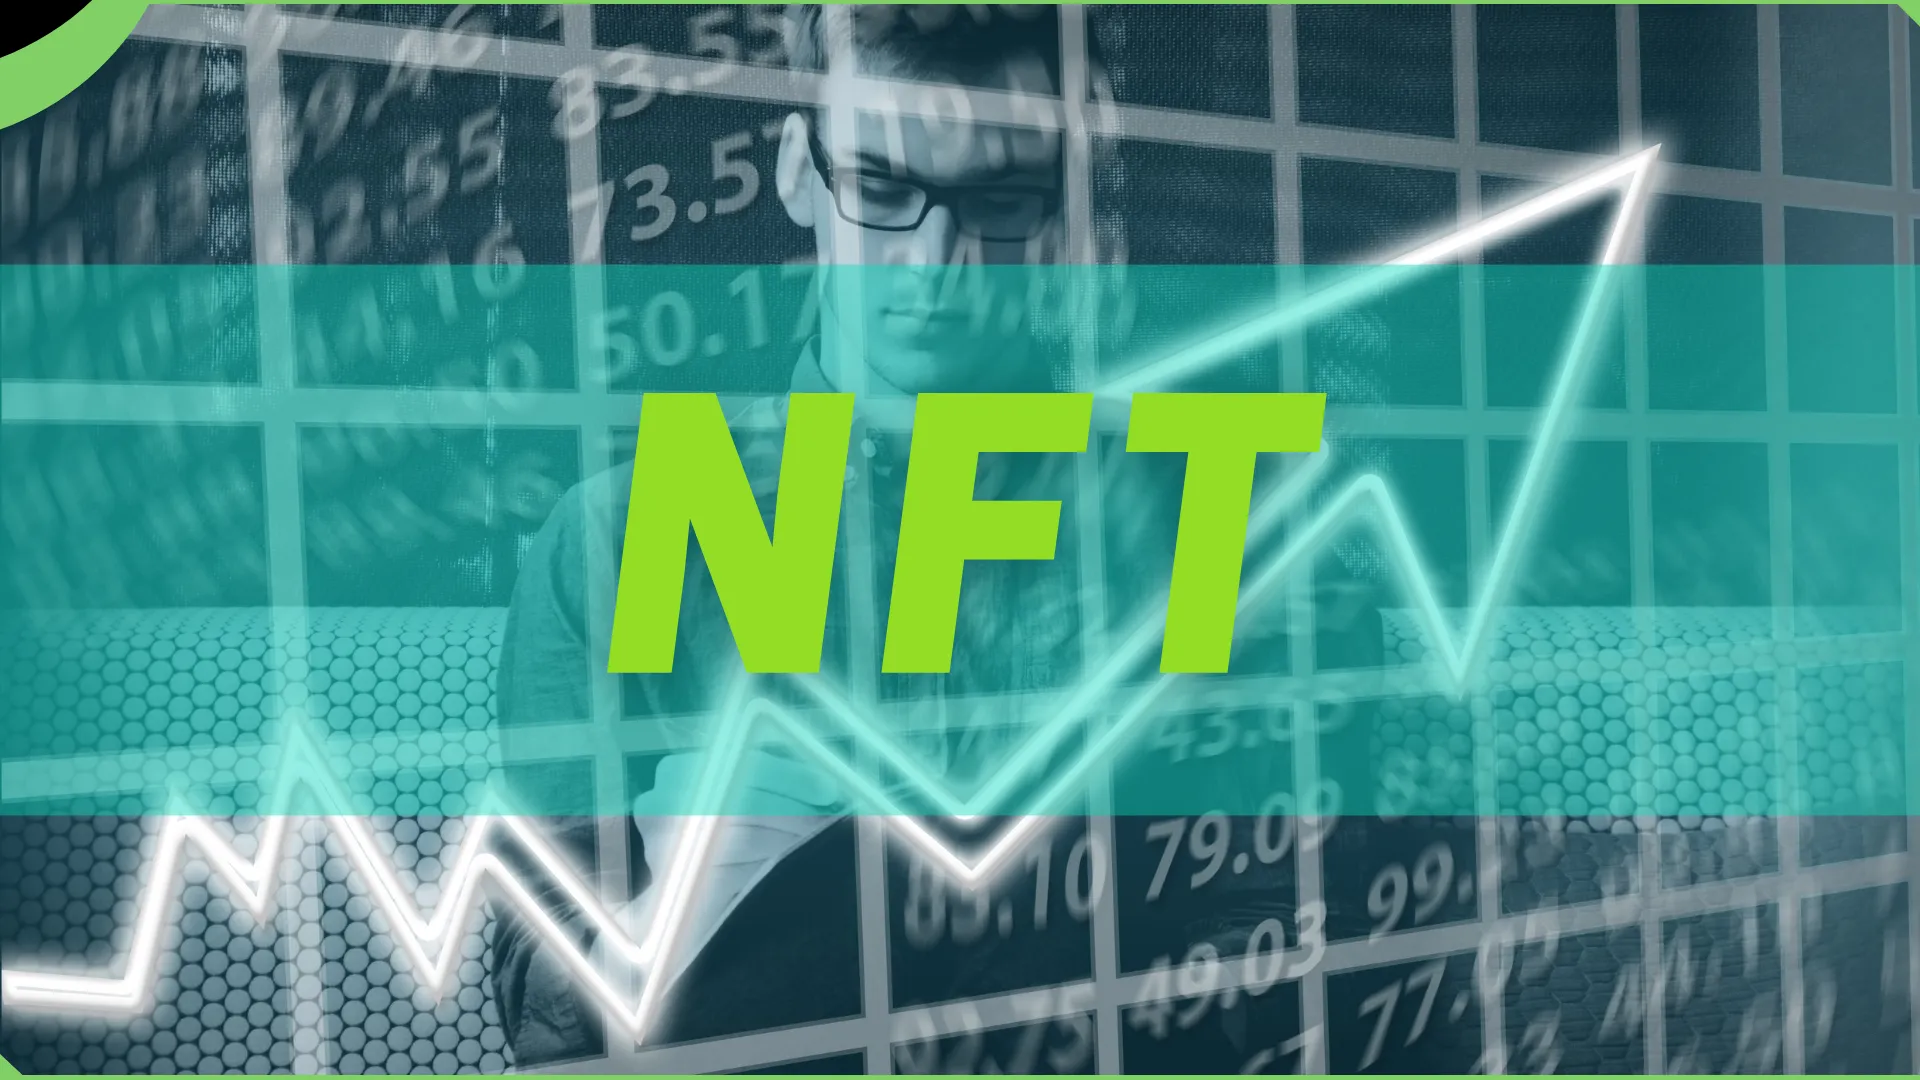 Mayor crecimiento de los NFT frente a las criptomonedas